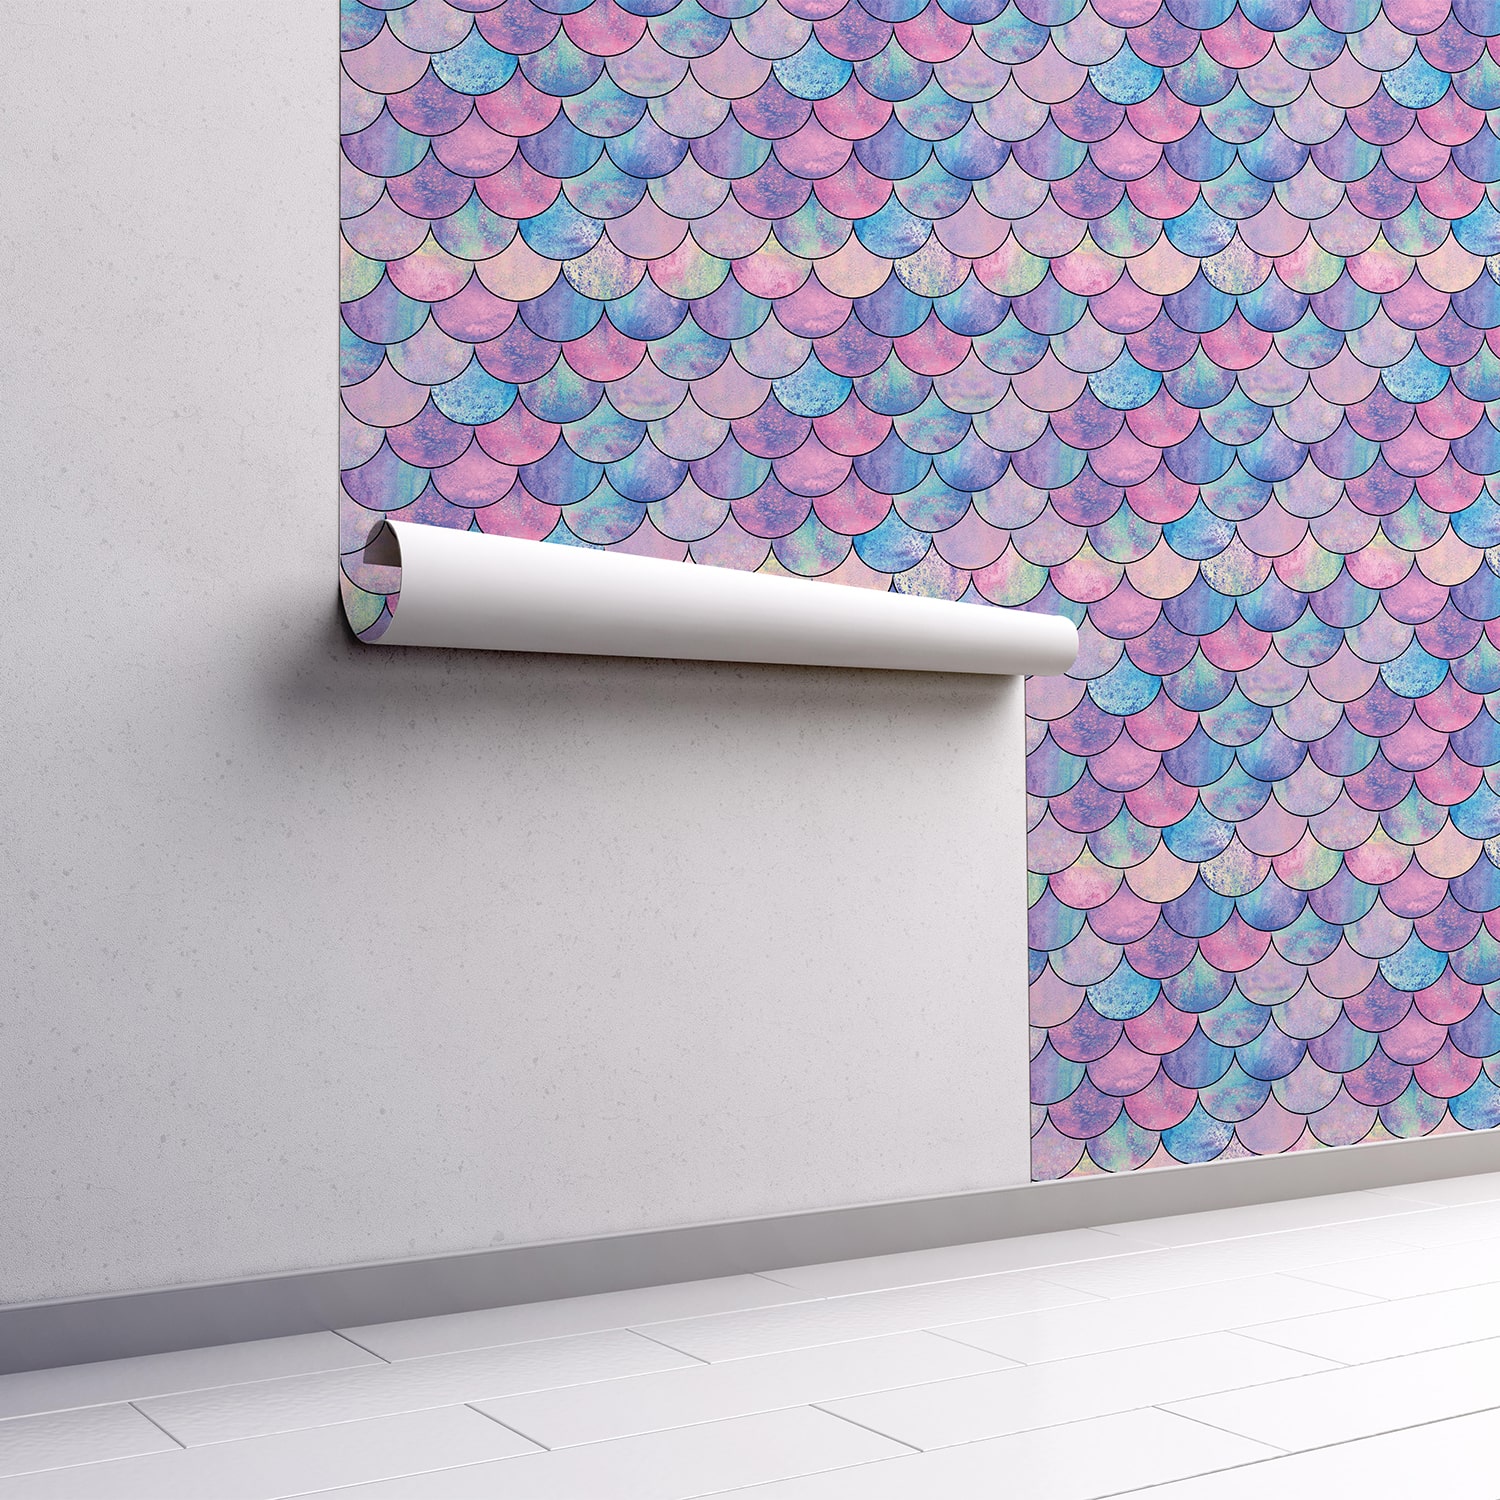 PP62-mur.rouleau-papier-peint-adhesif-decoratif-revetement-vinyle-motifs-ecaille-de-poisson-multicolore-renovation-meuble-mur-min